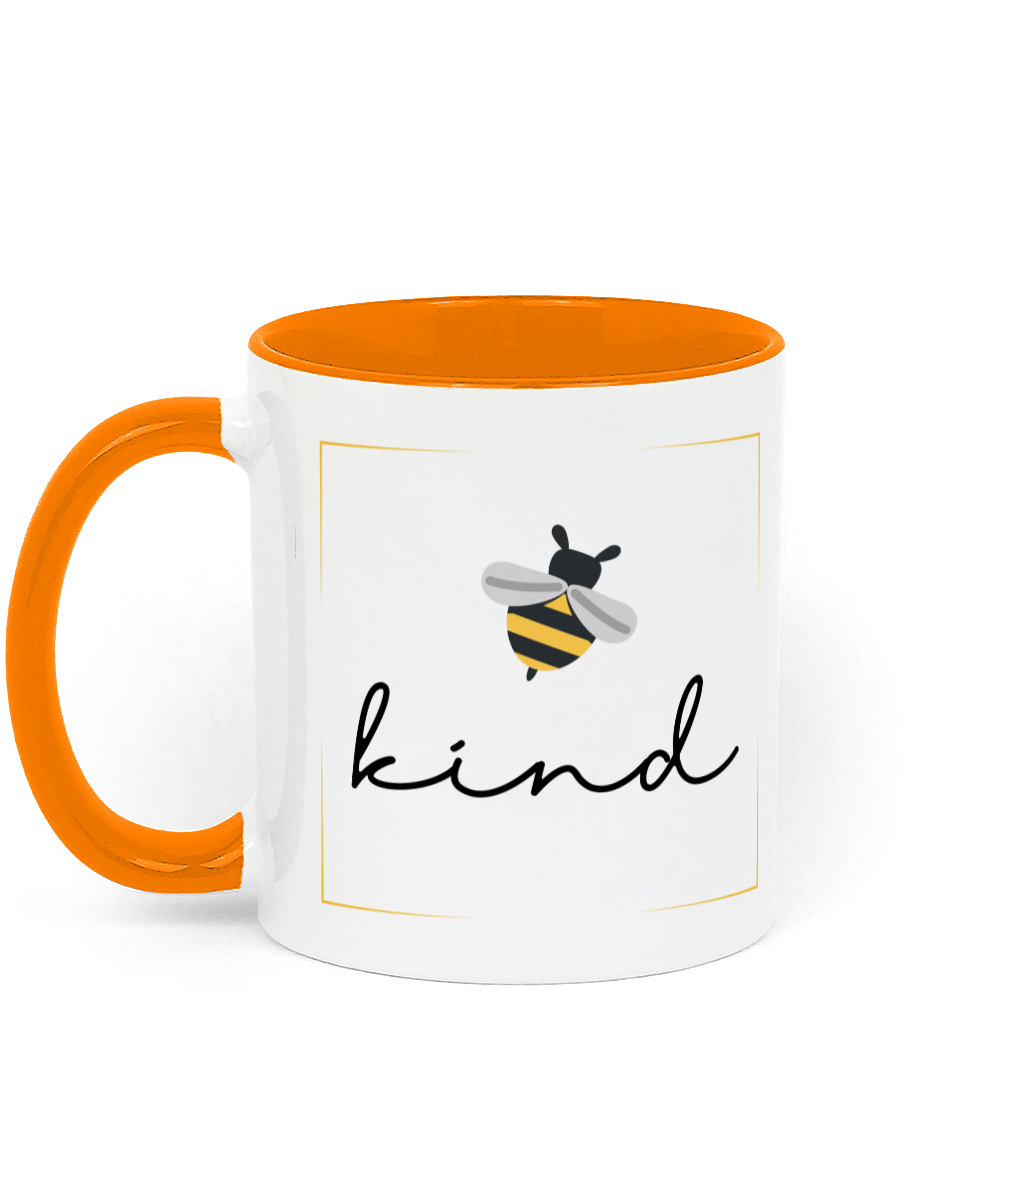 Be Kind Mug.11 oz mug. Daily Affirmations, Motivation, Inspiration. Perfect Gift. Two-toned. Orange